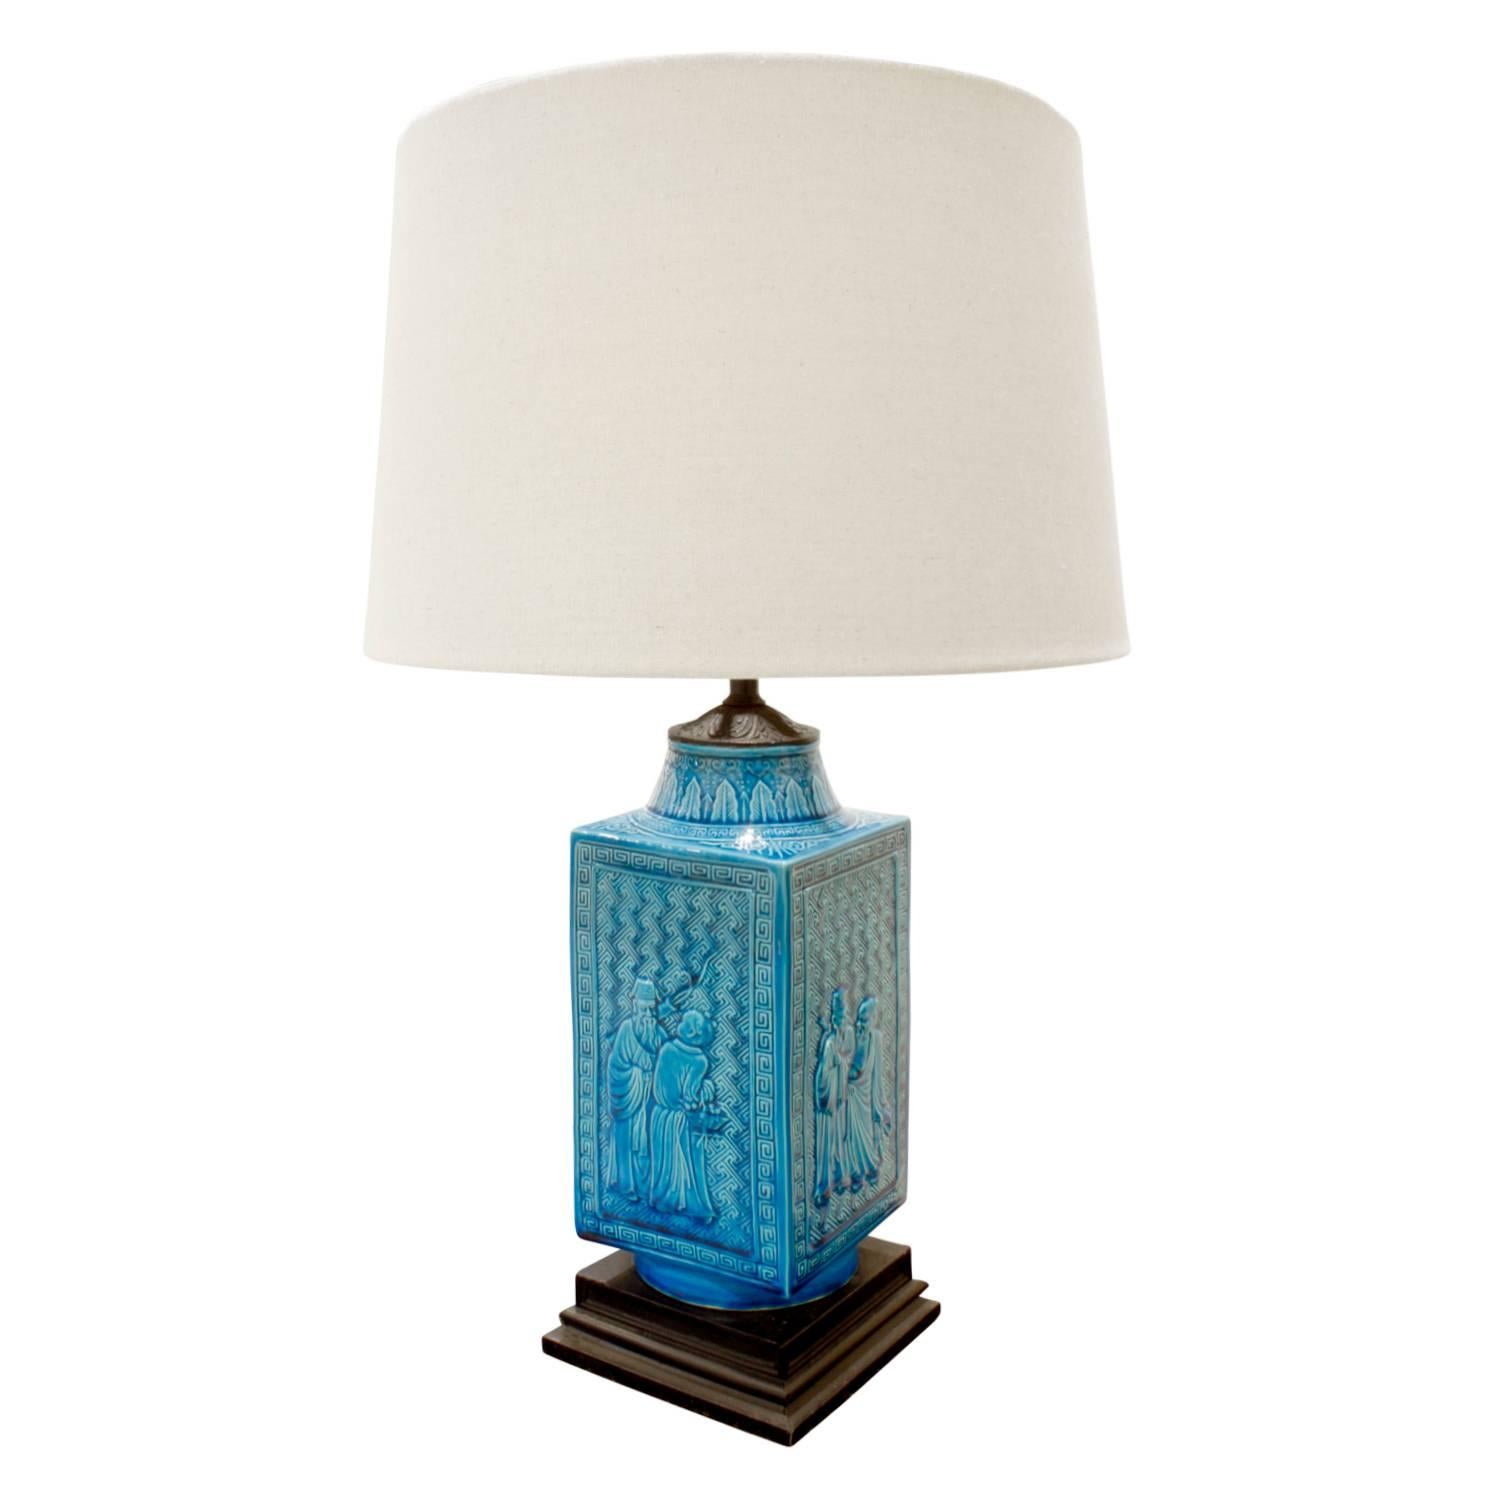 Lampe de table en céramique fabriquée en studio avec une glaçure bleu profond et des motifs chinois, américaine, années 1950.

Mesure : Diamètre de l'abat-jour : 14 pouces.